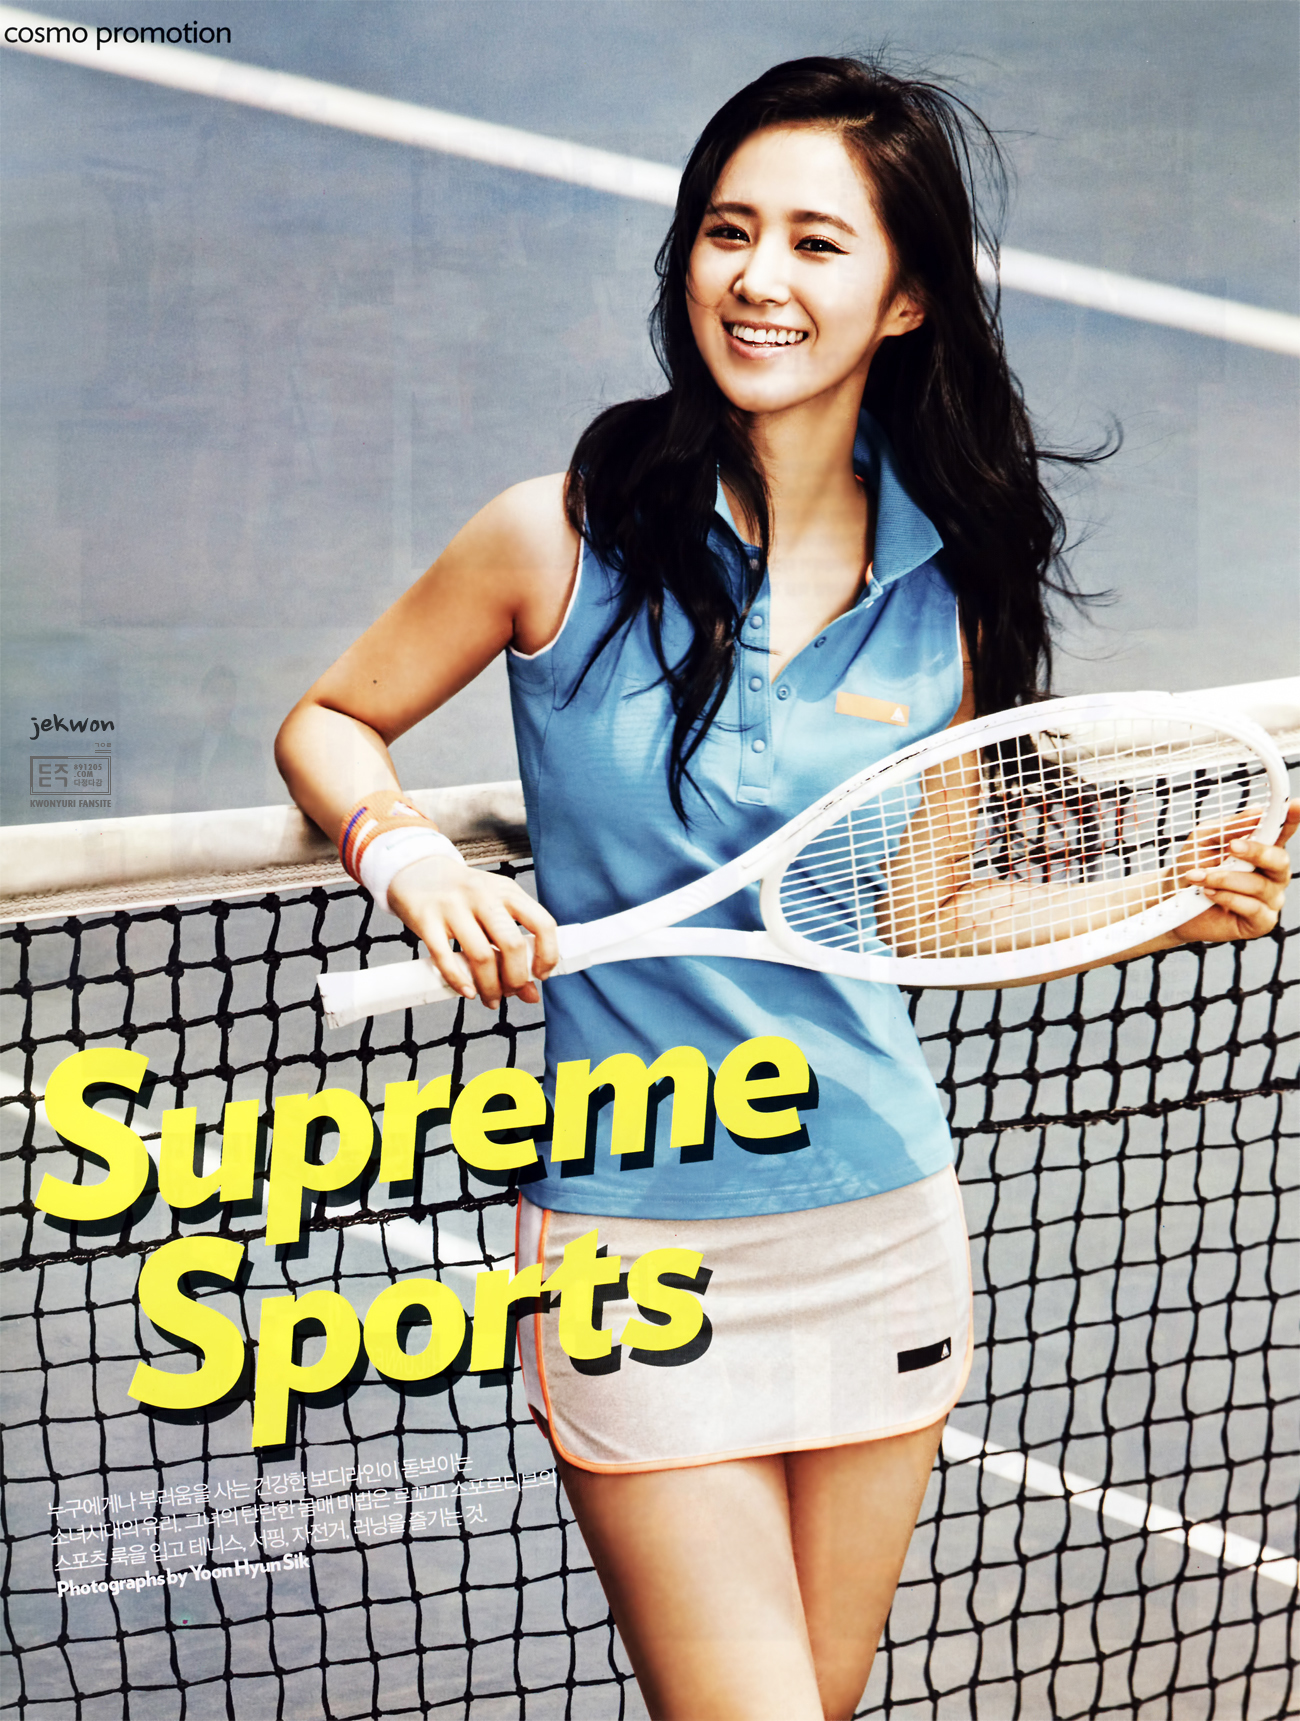 [PIC][21-05-2013]Yuri xuất hiện trên ấn phẩm tháng 6 của tạp chí "Cosmopolitan" 244ED241519B66472B8829